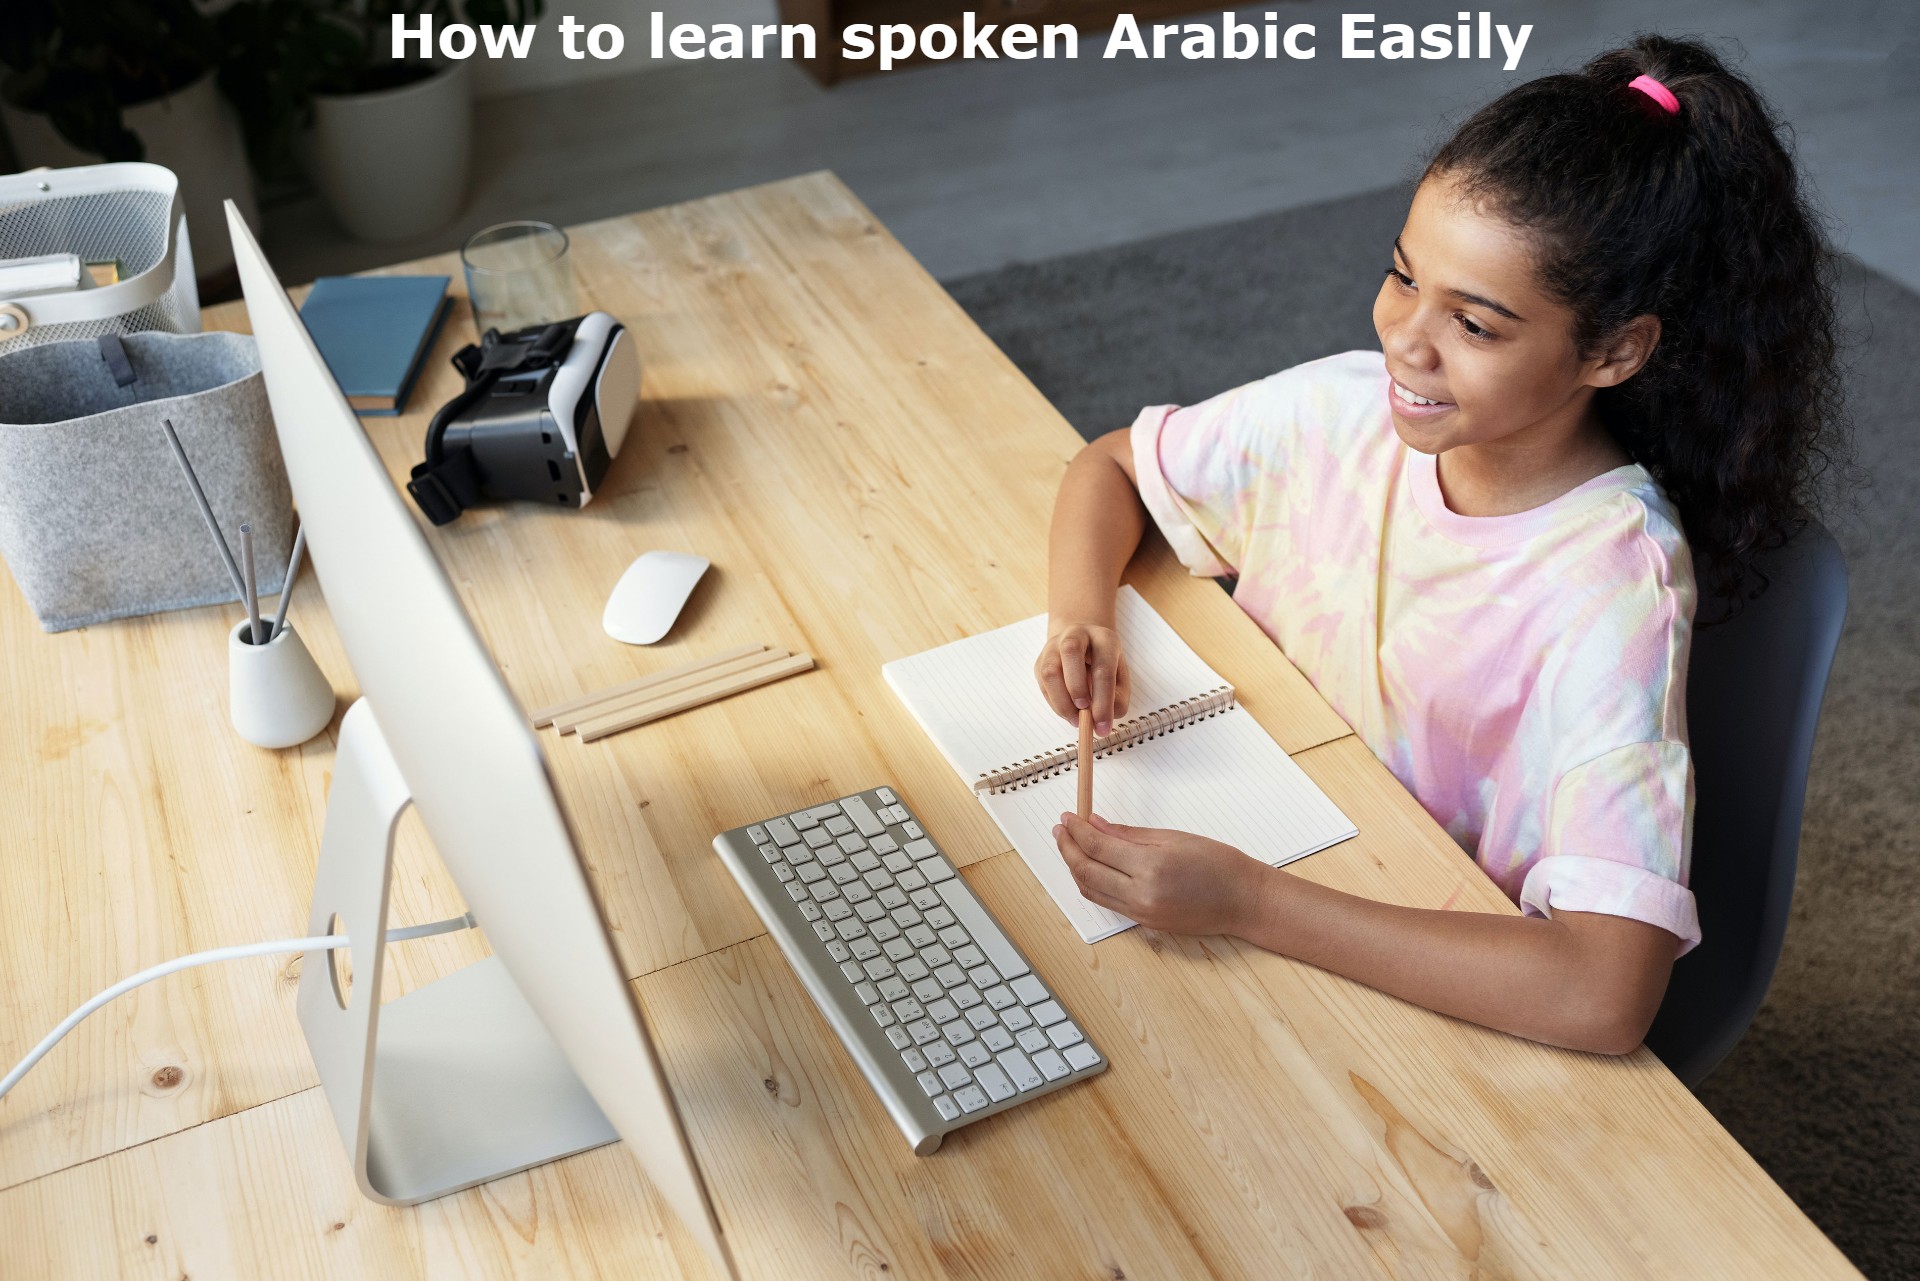 Spoken Arabic